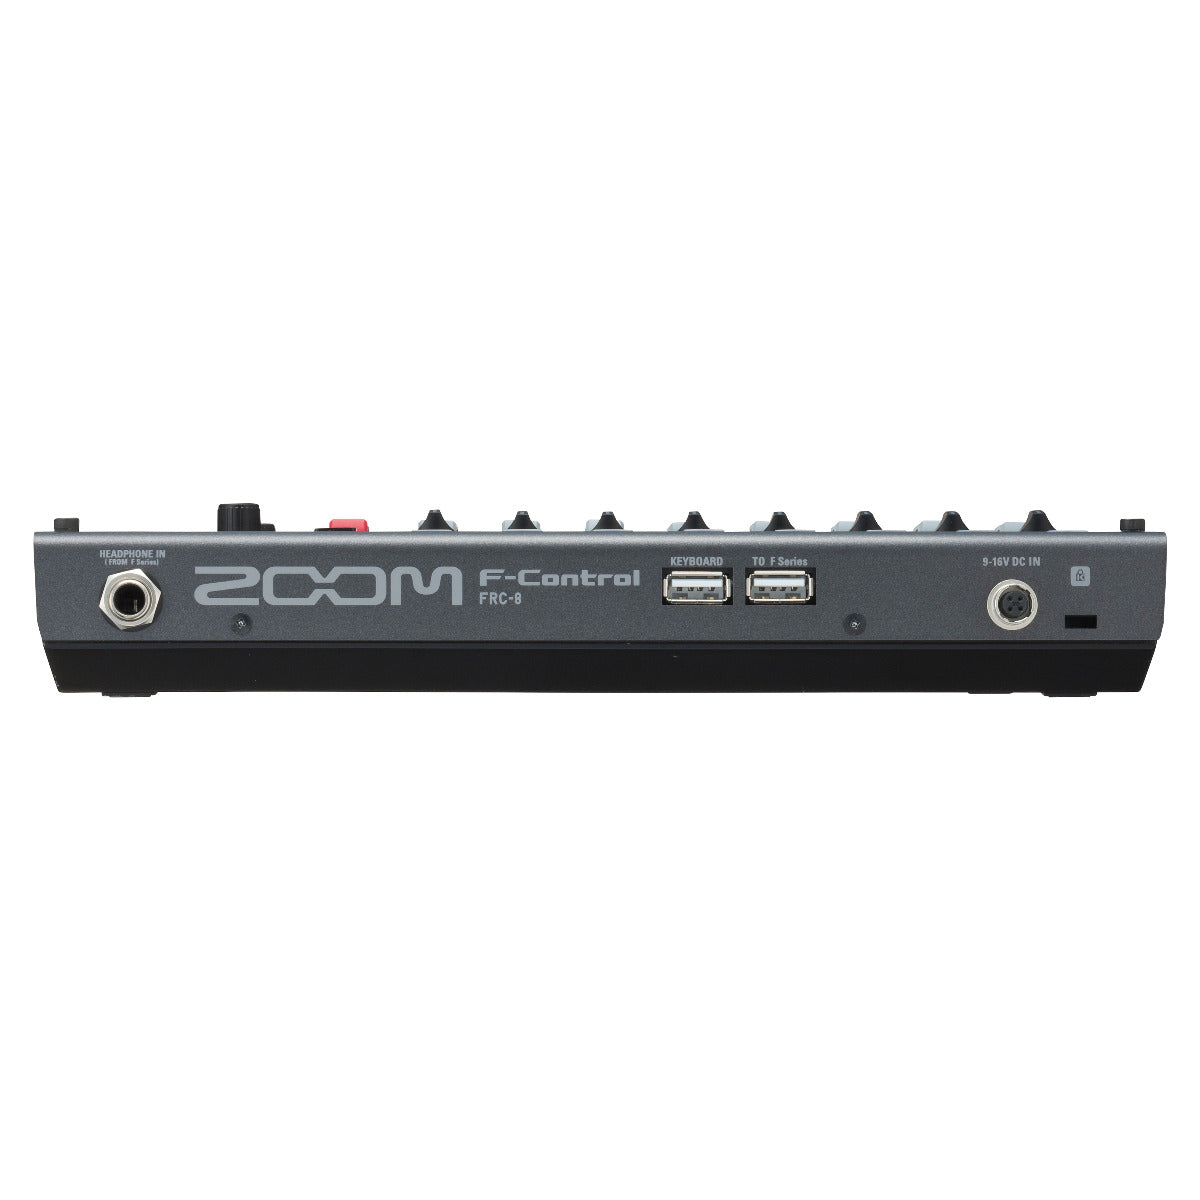 Zoom F-Control FRC-8